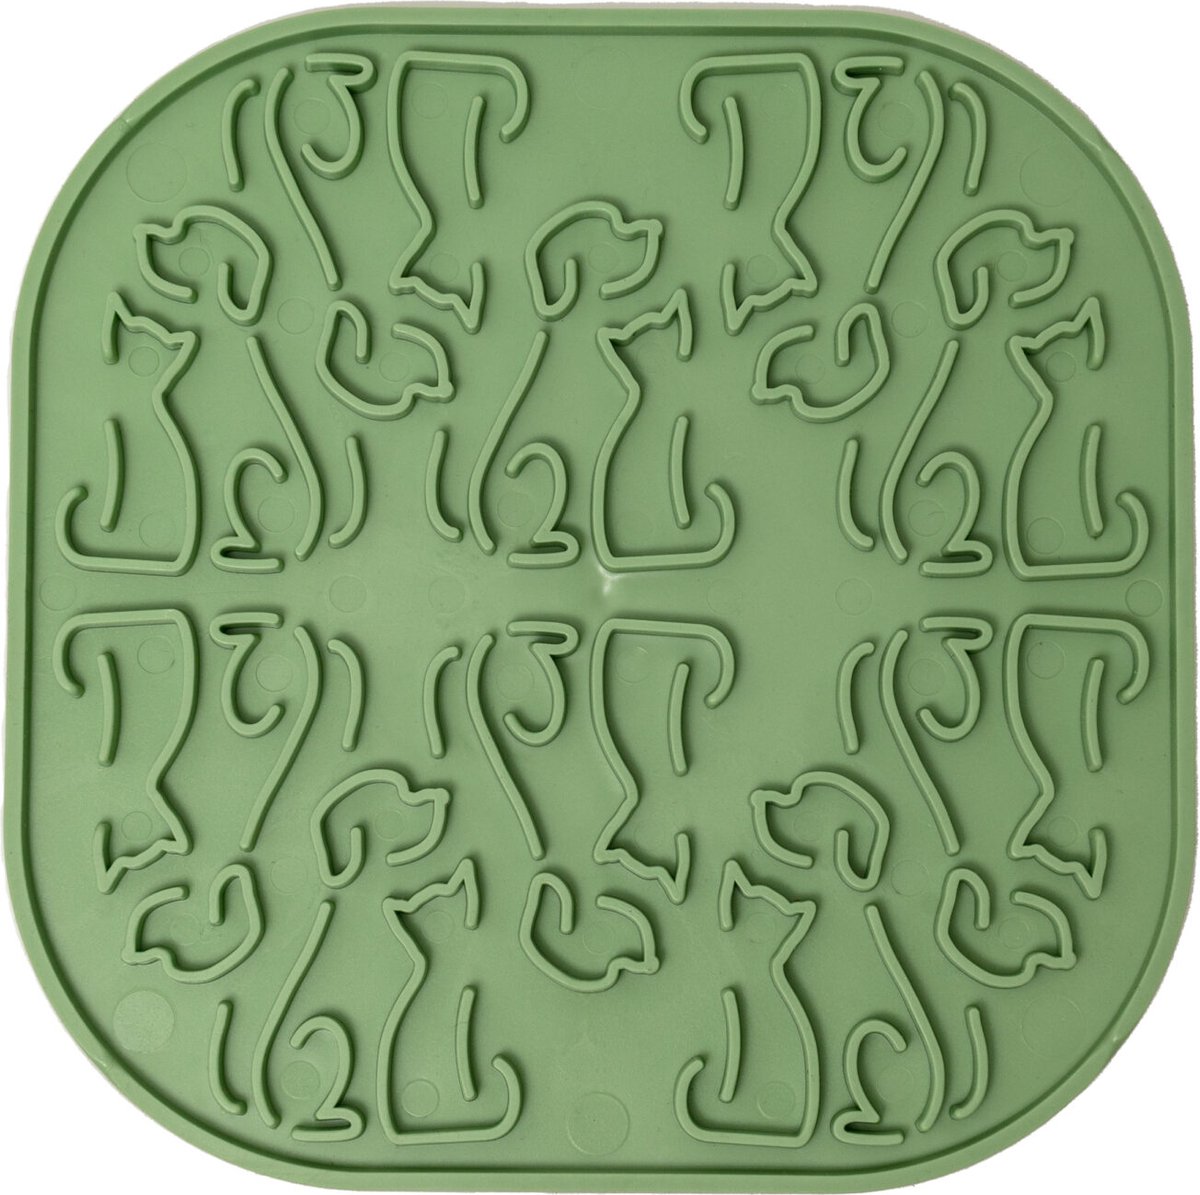 FIBOO - Lollipop - Likmat voor honden of katten - Slow Feeder - ECO - Groen - 20x20 cm